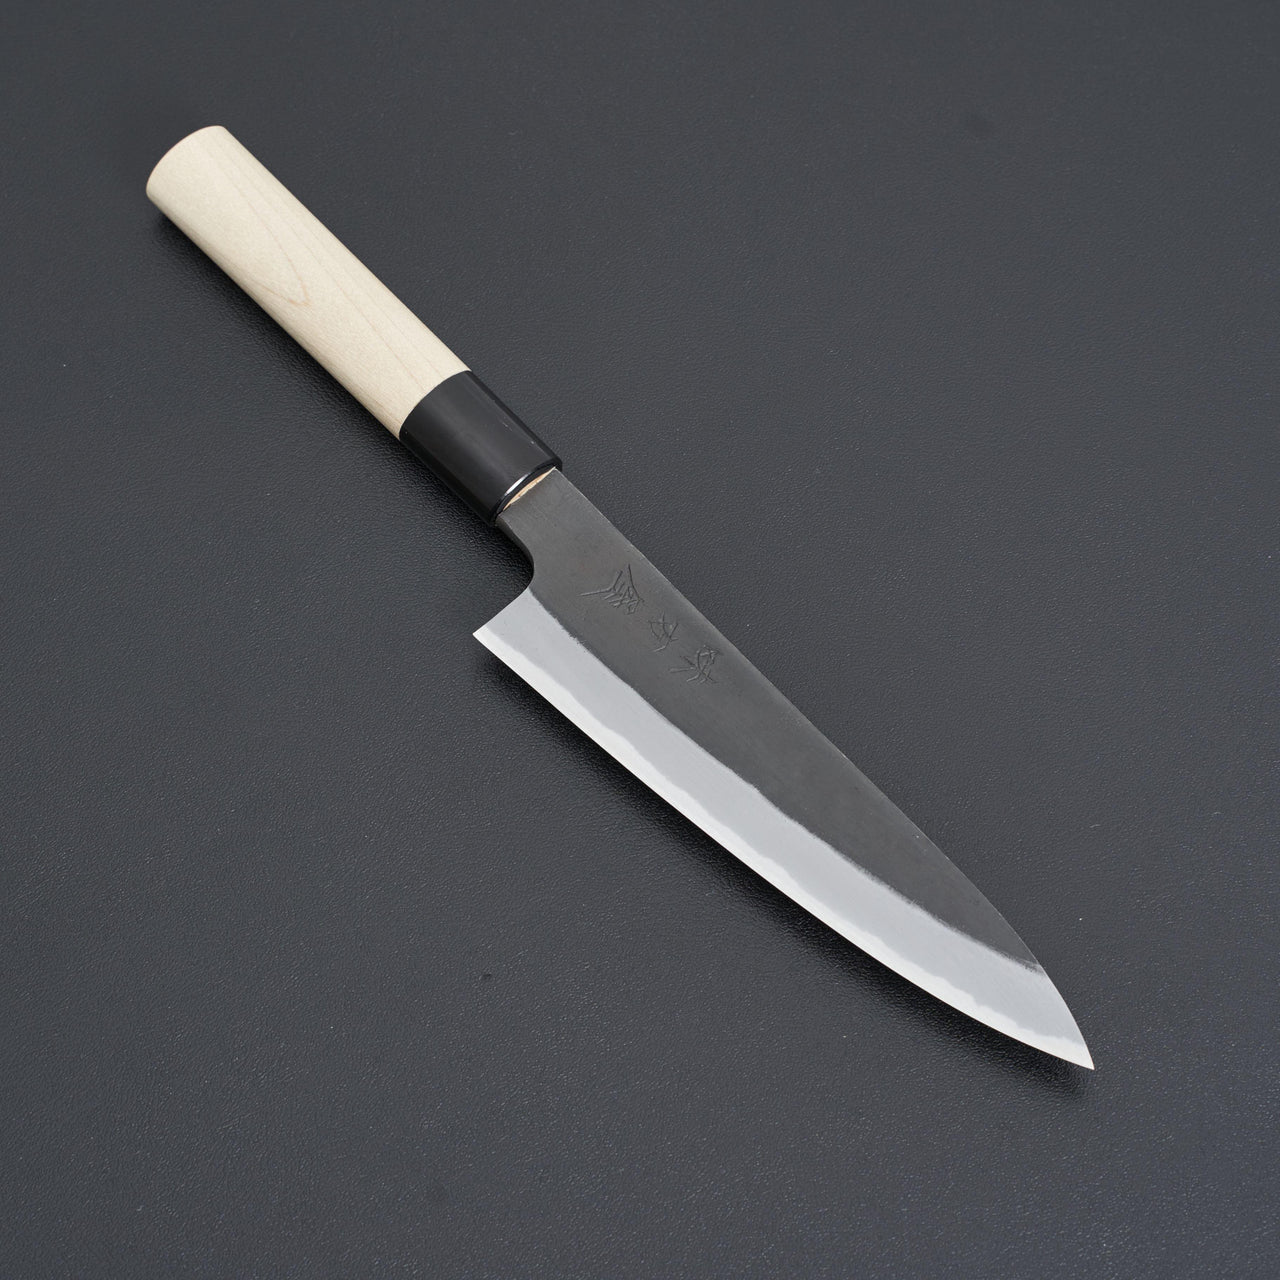 Hinoura Ajikataya Shirogami 2 Kurouchi Petty 150mm-Knife-Hinoura-Carbon Knife Co